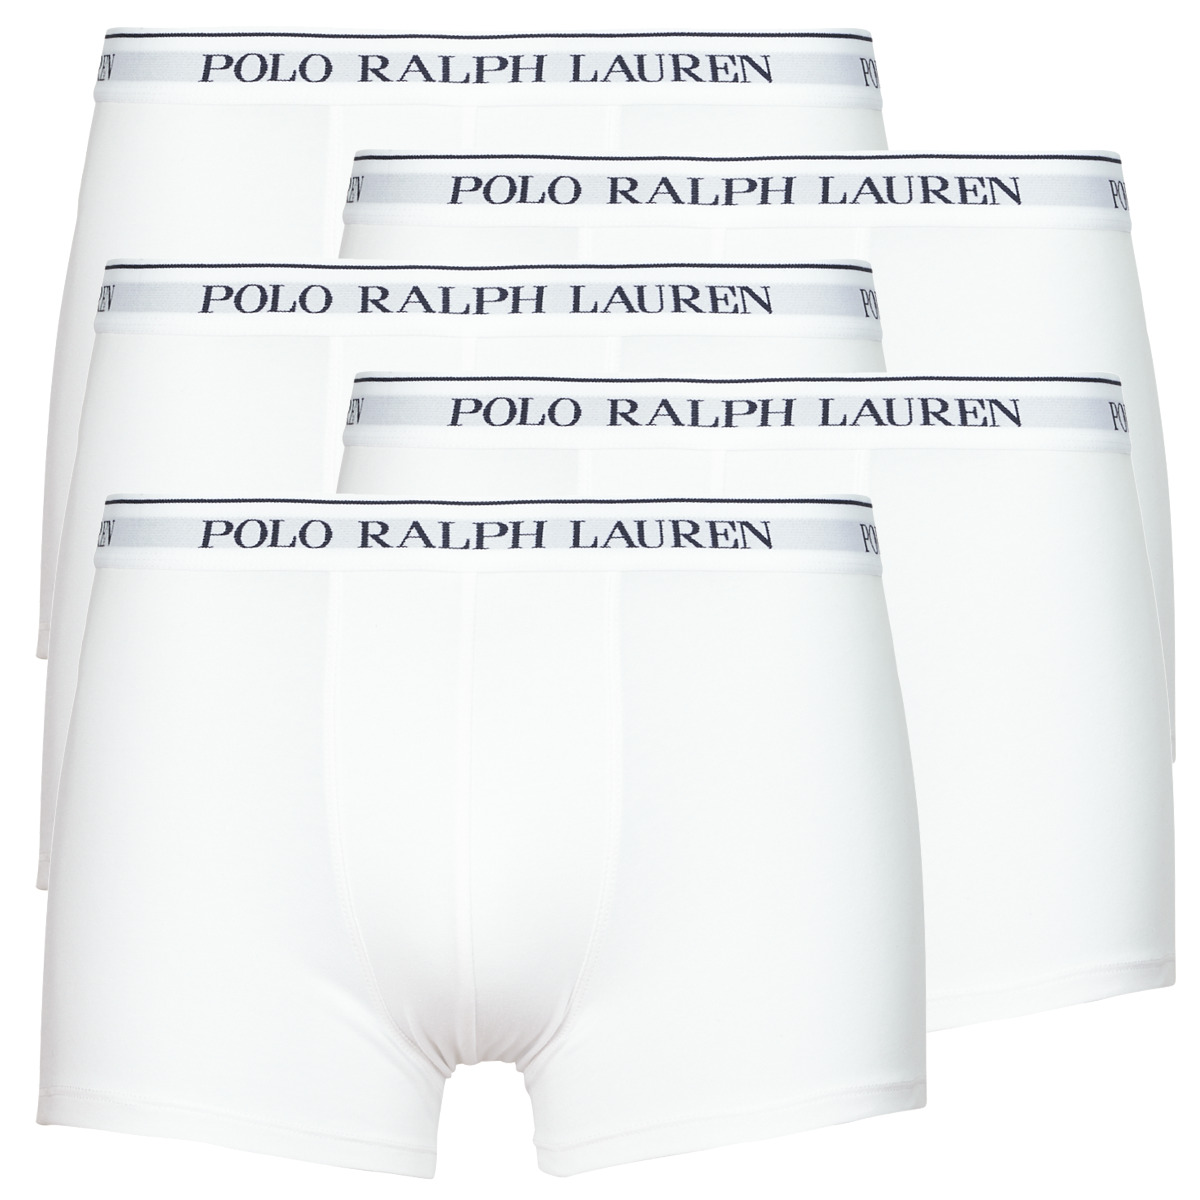 Polo Ralph Lauren Blanc CLSSIC TRUNK-5 PACK-TRUNK nzxjz